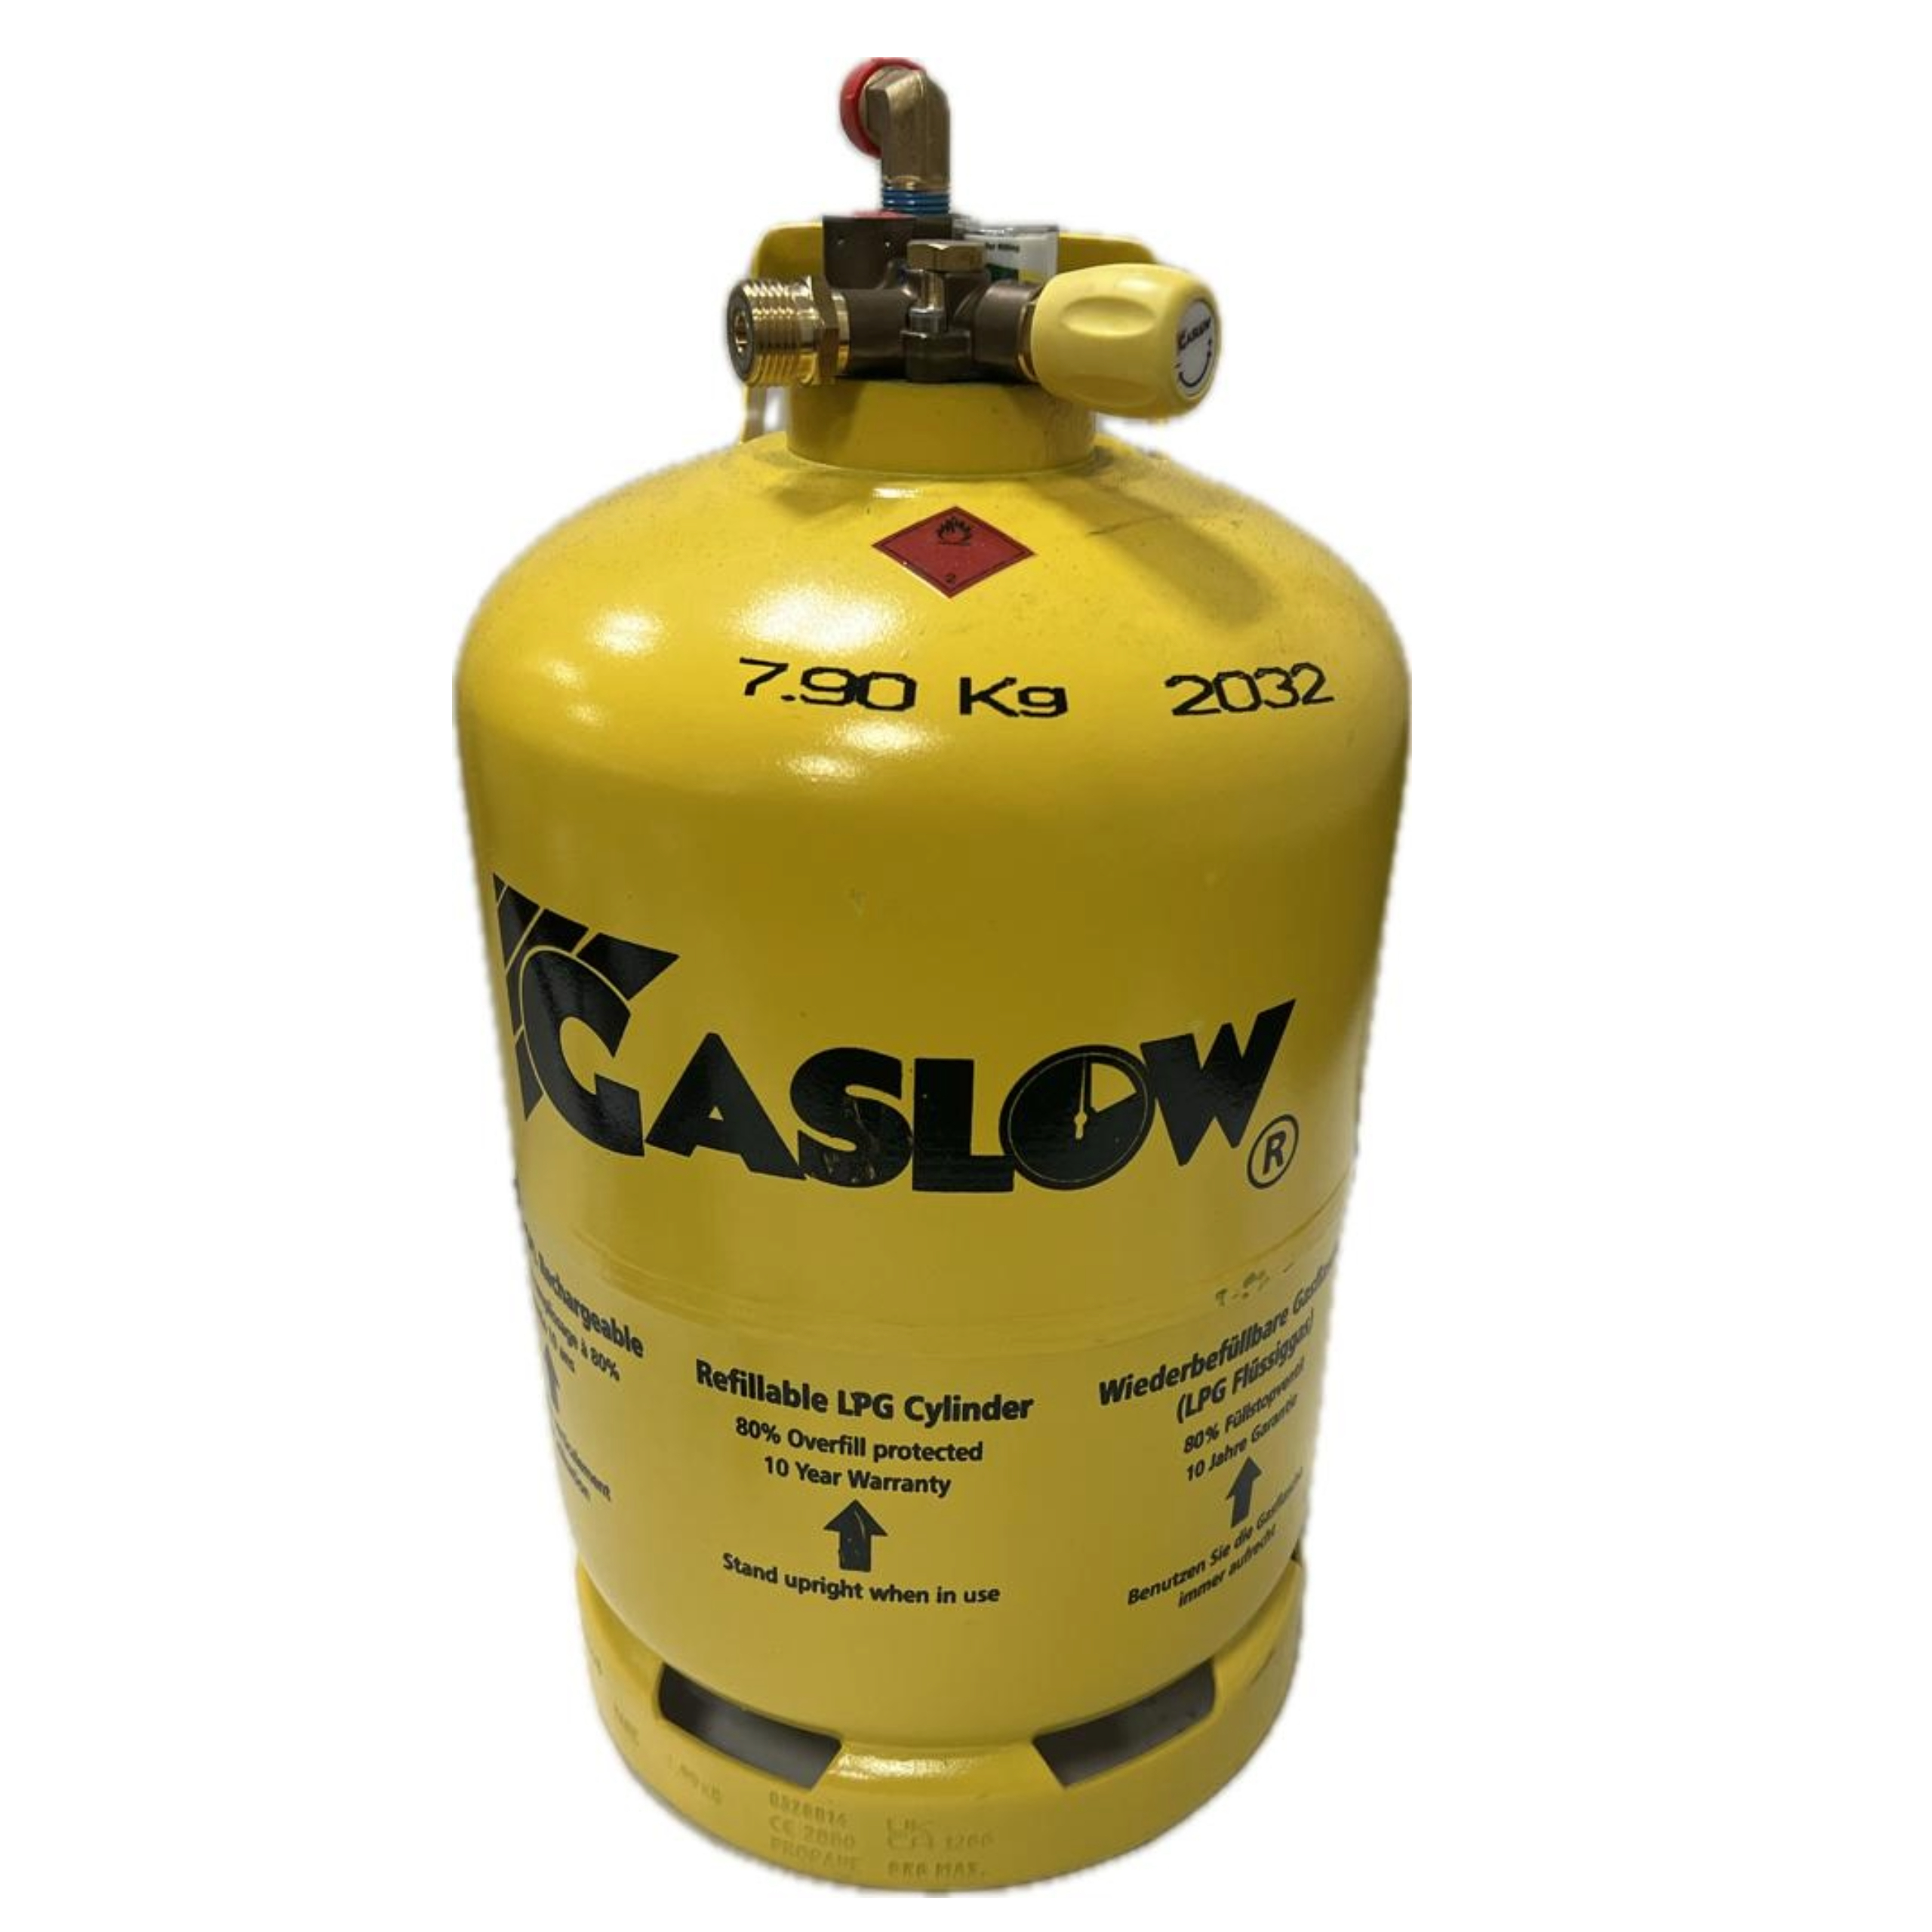 Gasflasche Gaslow 6kg gelb wiederbefüllbar Tankflasche